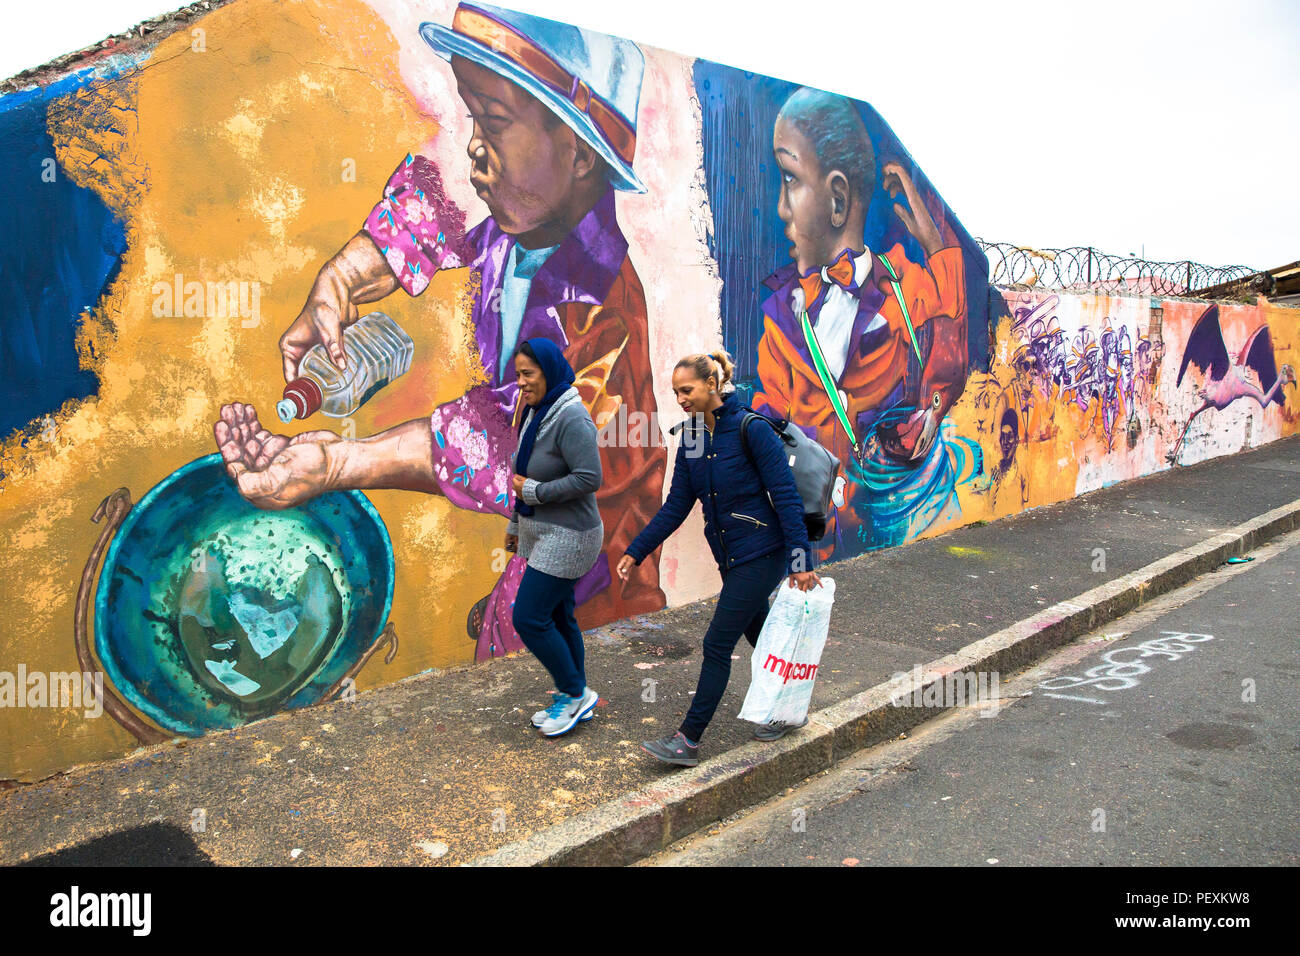 Cap sur le thème de la crise de l'eau peinture murale, de l'ouest de la Province du Cap, Afrique du Sud Banque D'Images